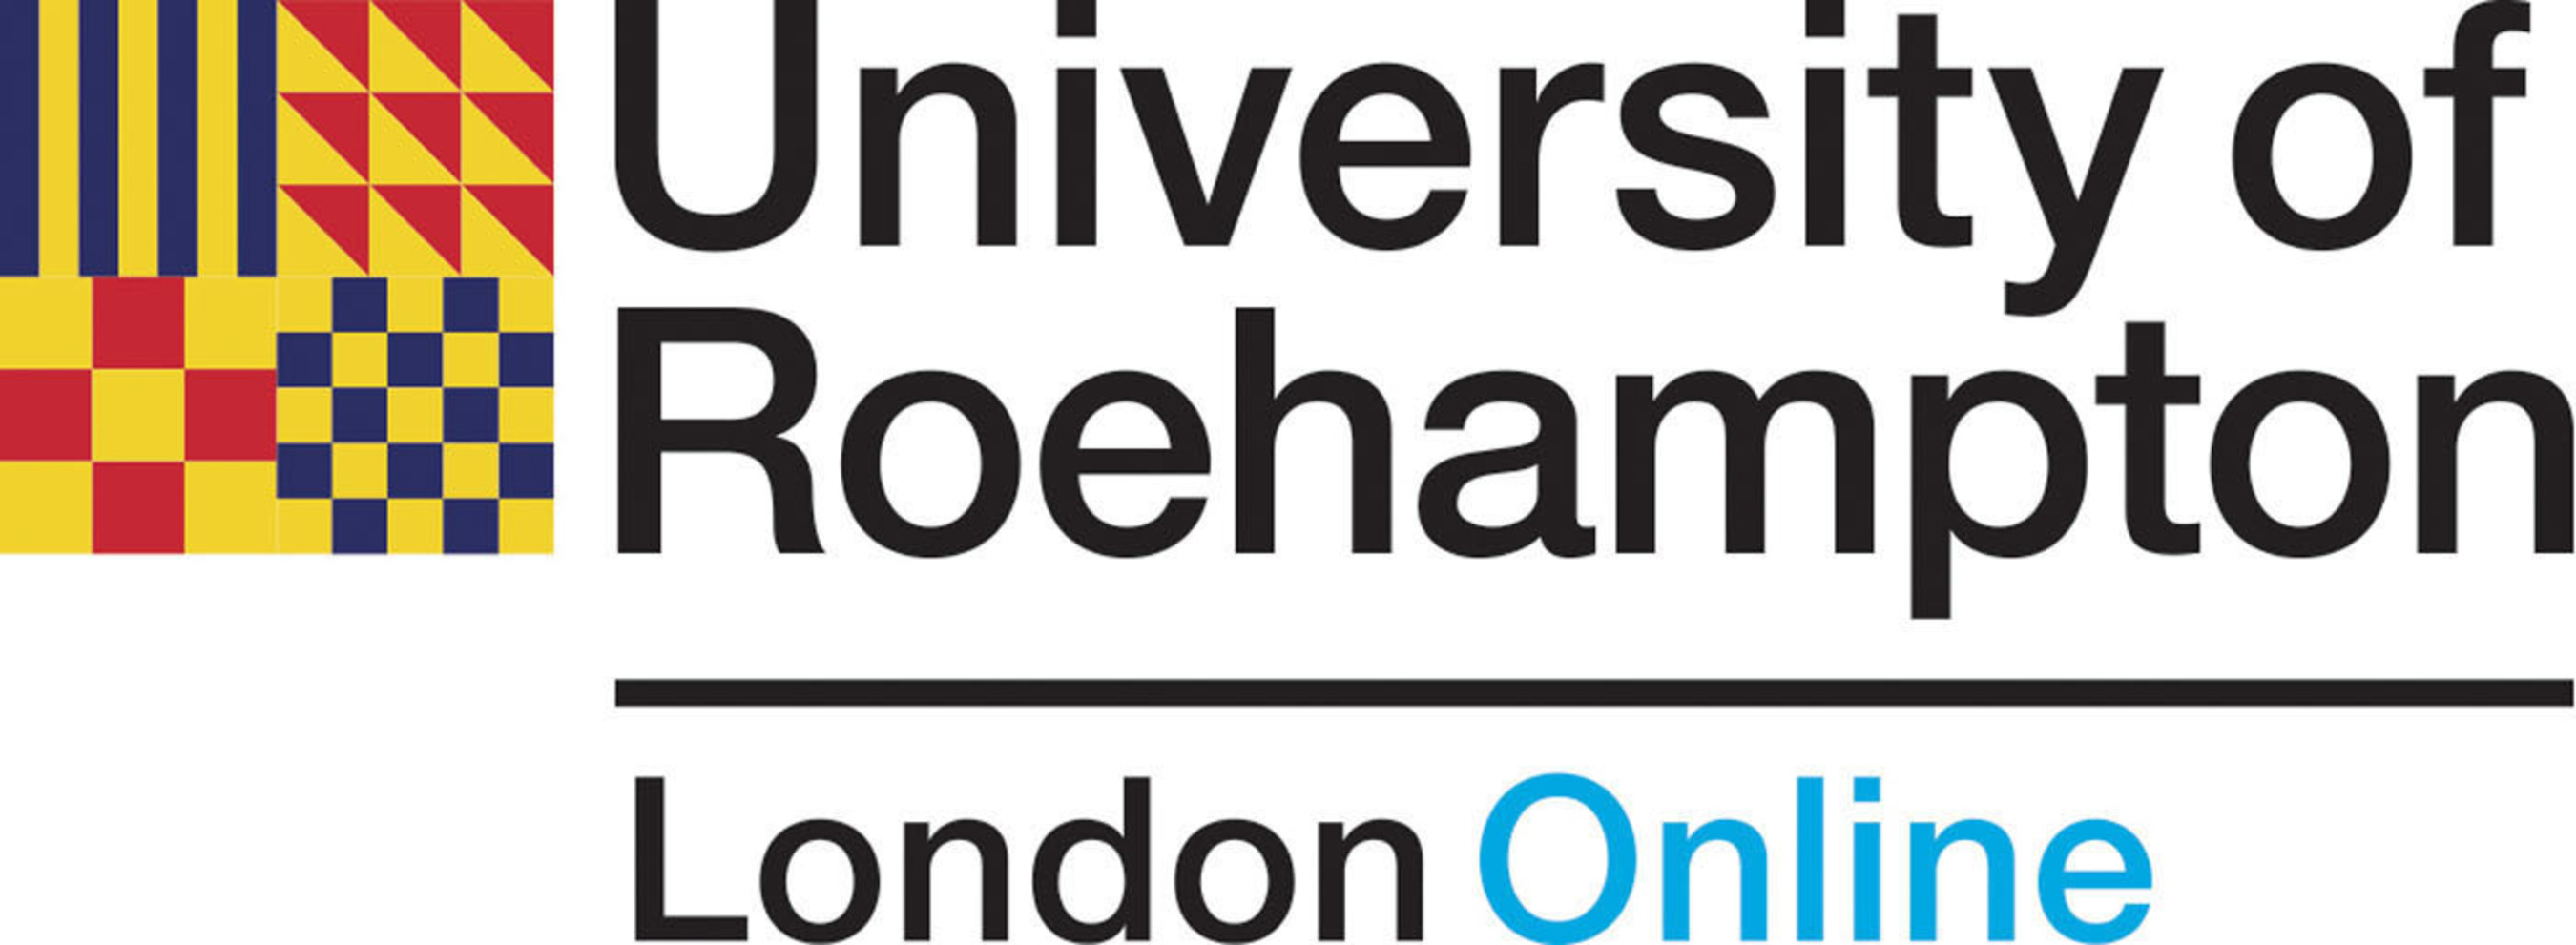 University of Roehampton, London Online.